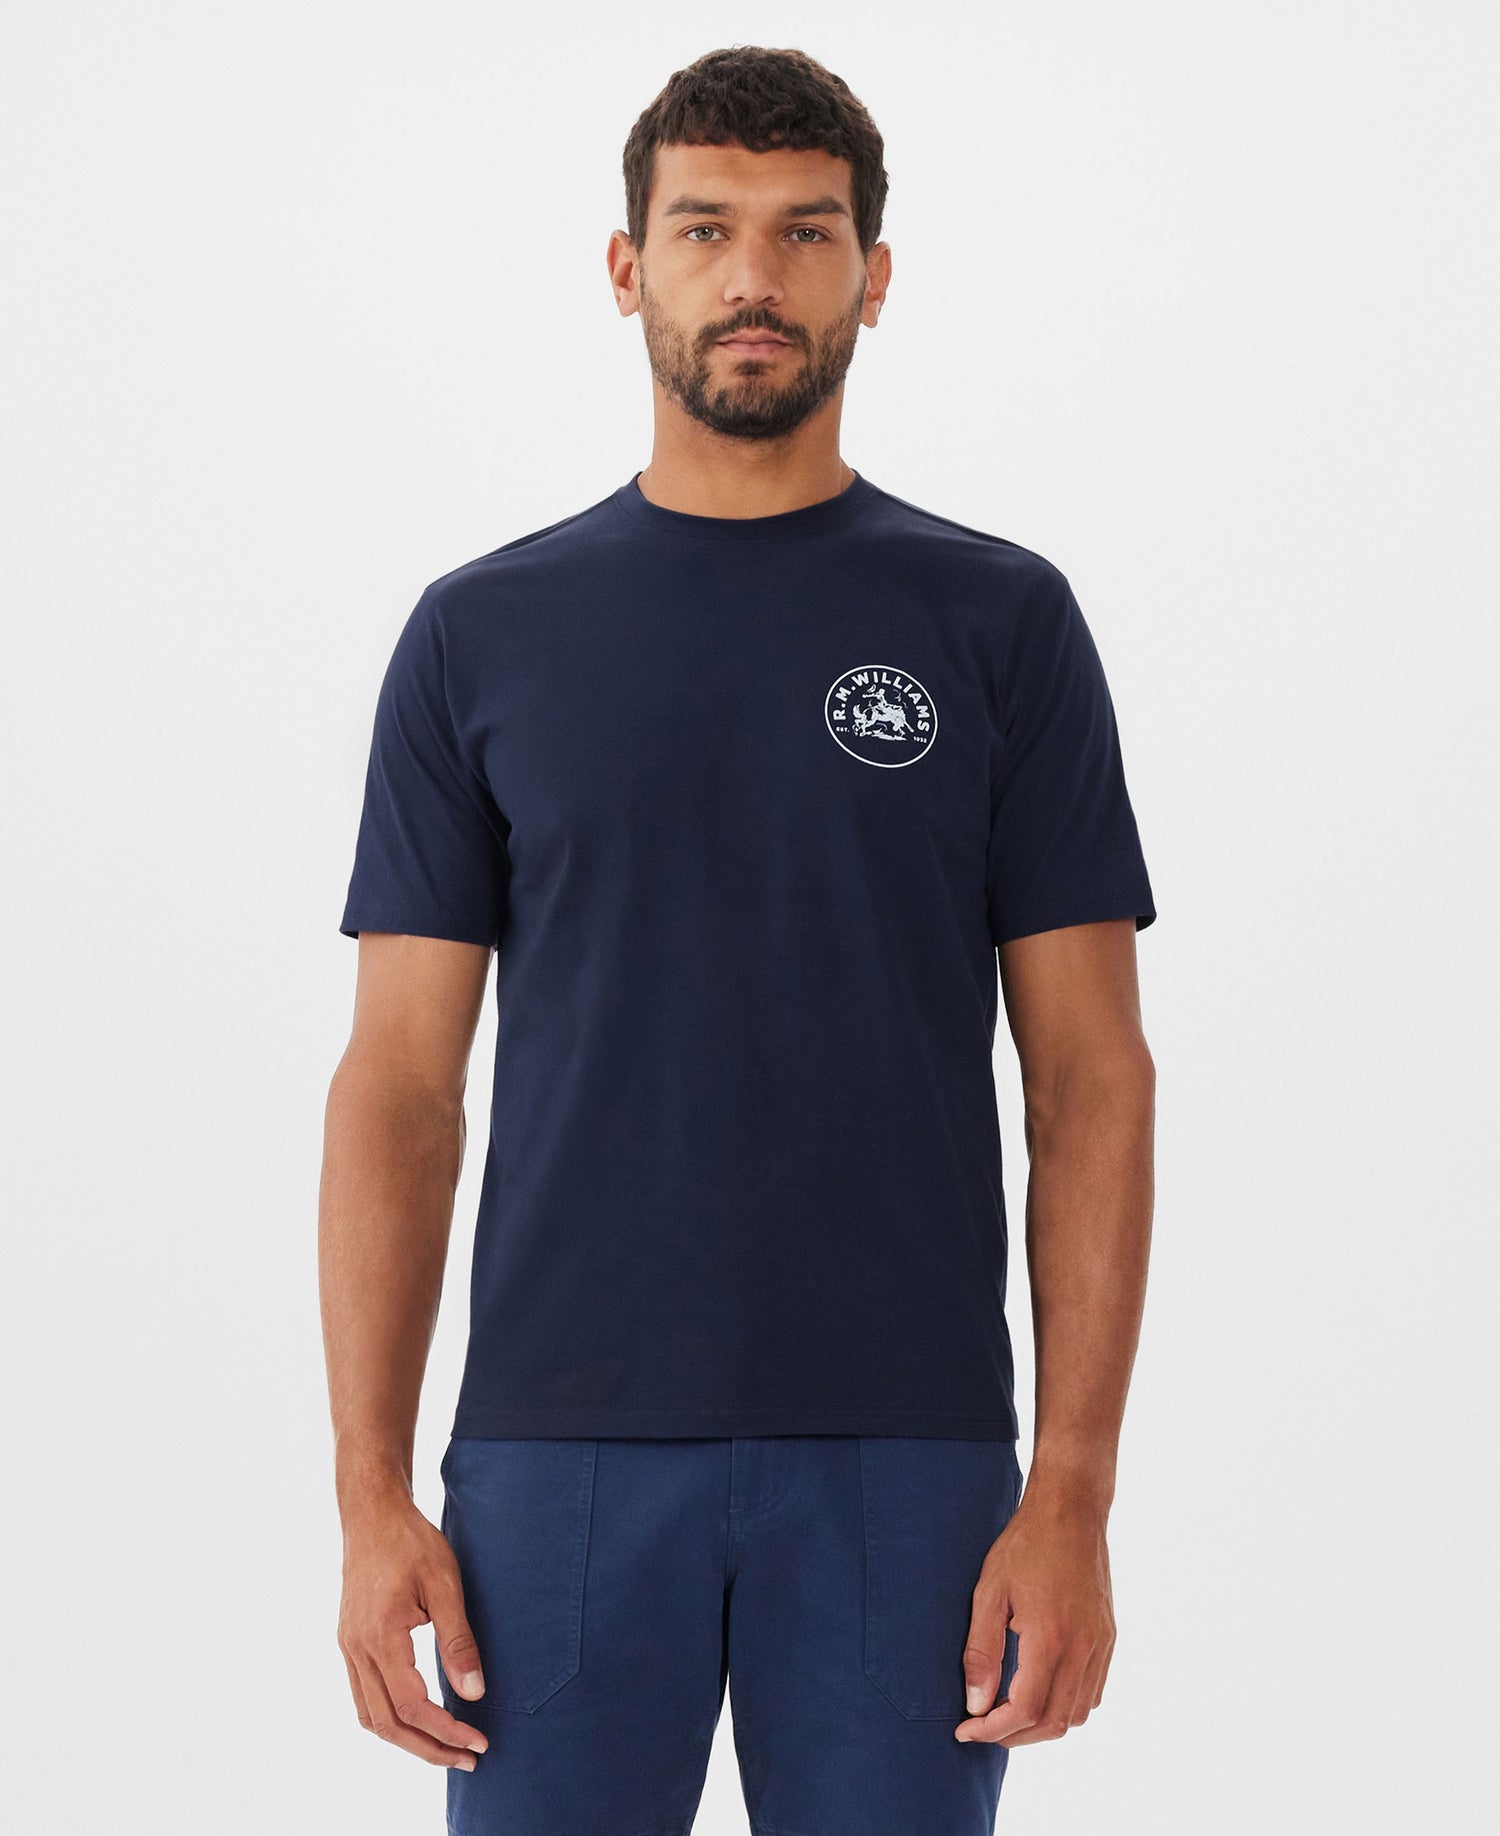 Wondai T-Shirt - Dark Navy